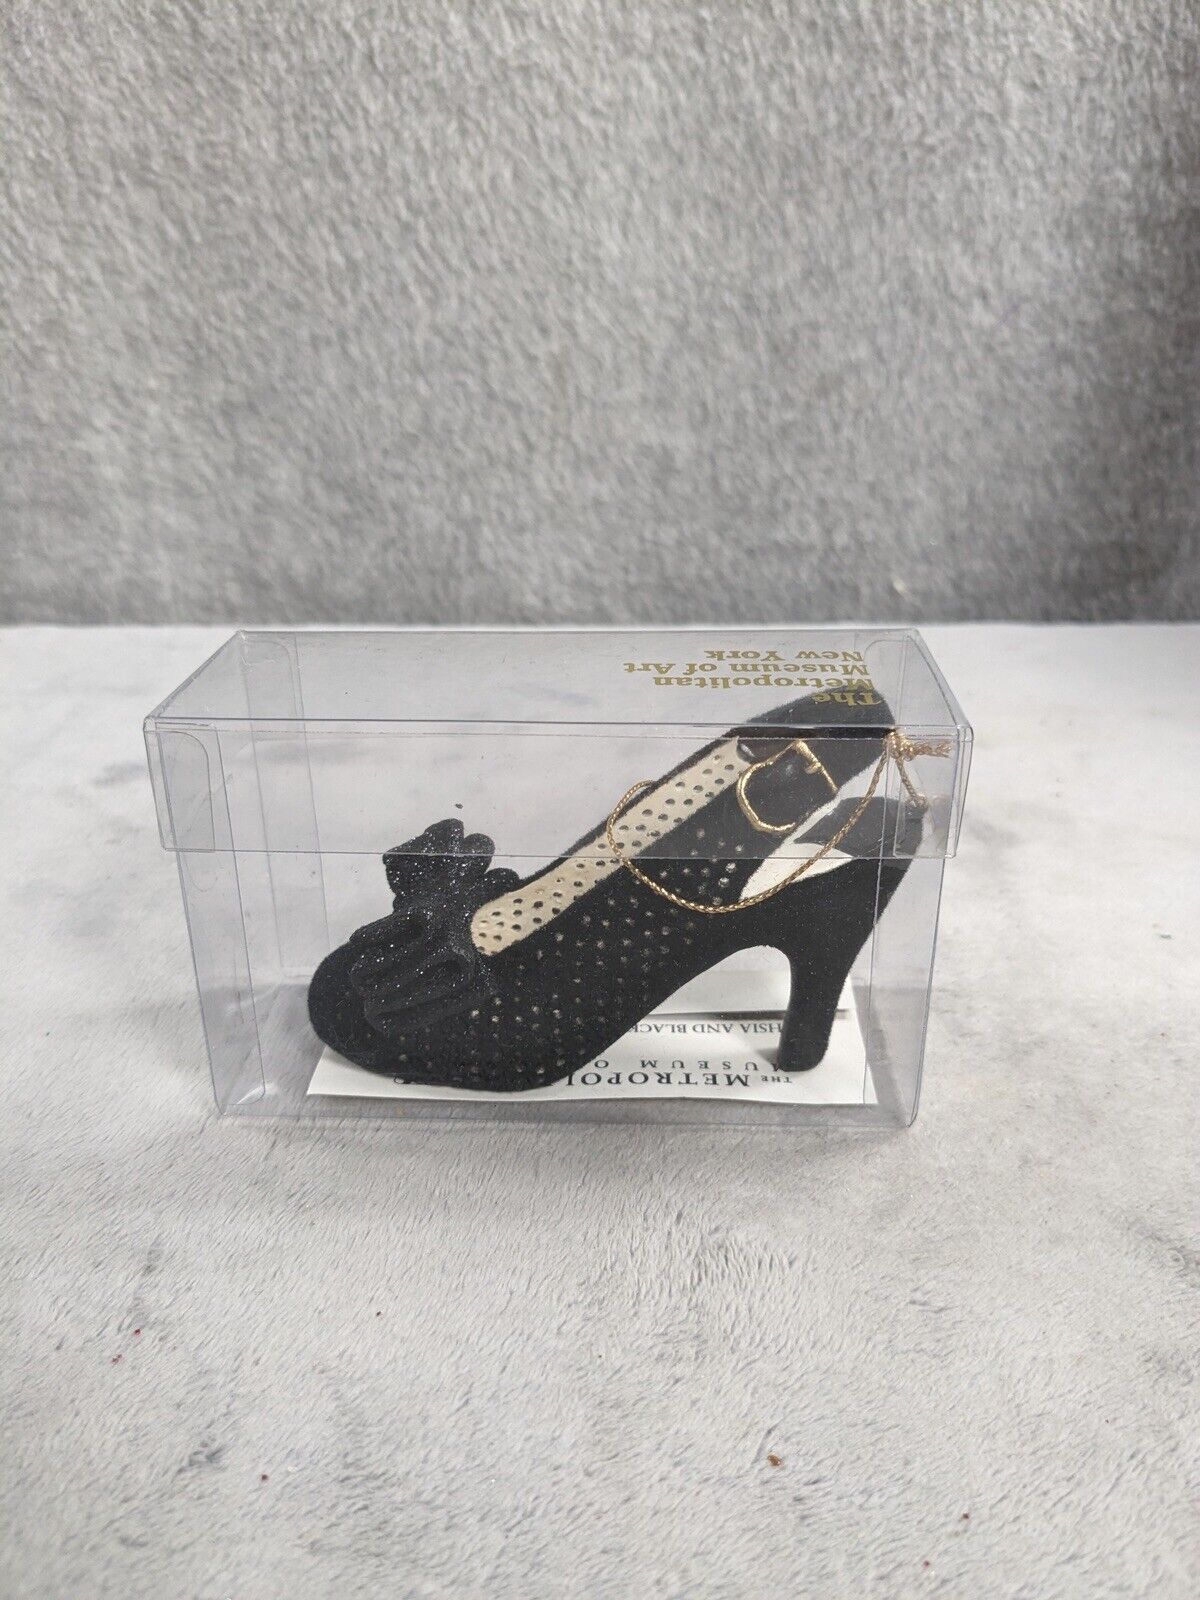 Vintage Metropolitan Museum of Art Miniature Shoe Ornament Black Silver Gems